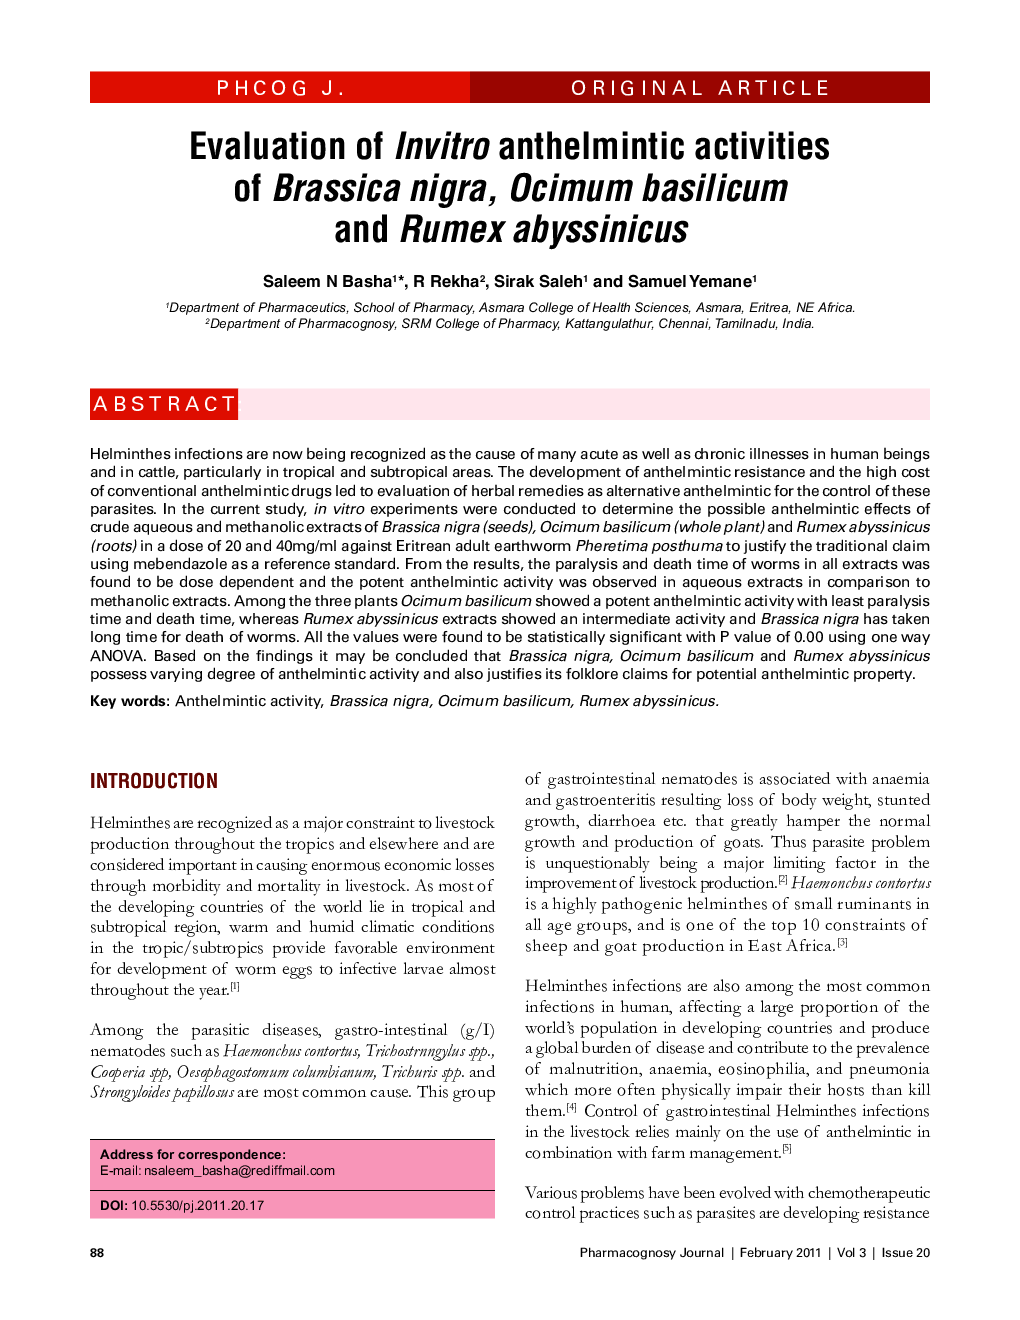 Evaluation of Invitro anthelmintic activities of Brassica nigra, Ocimum basilicum and Rumex abyssinicus